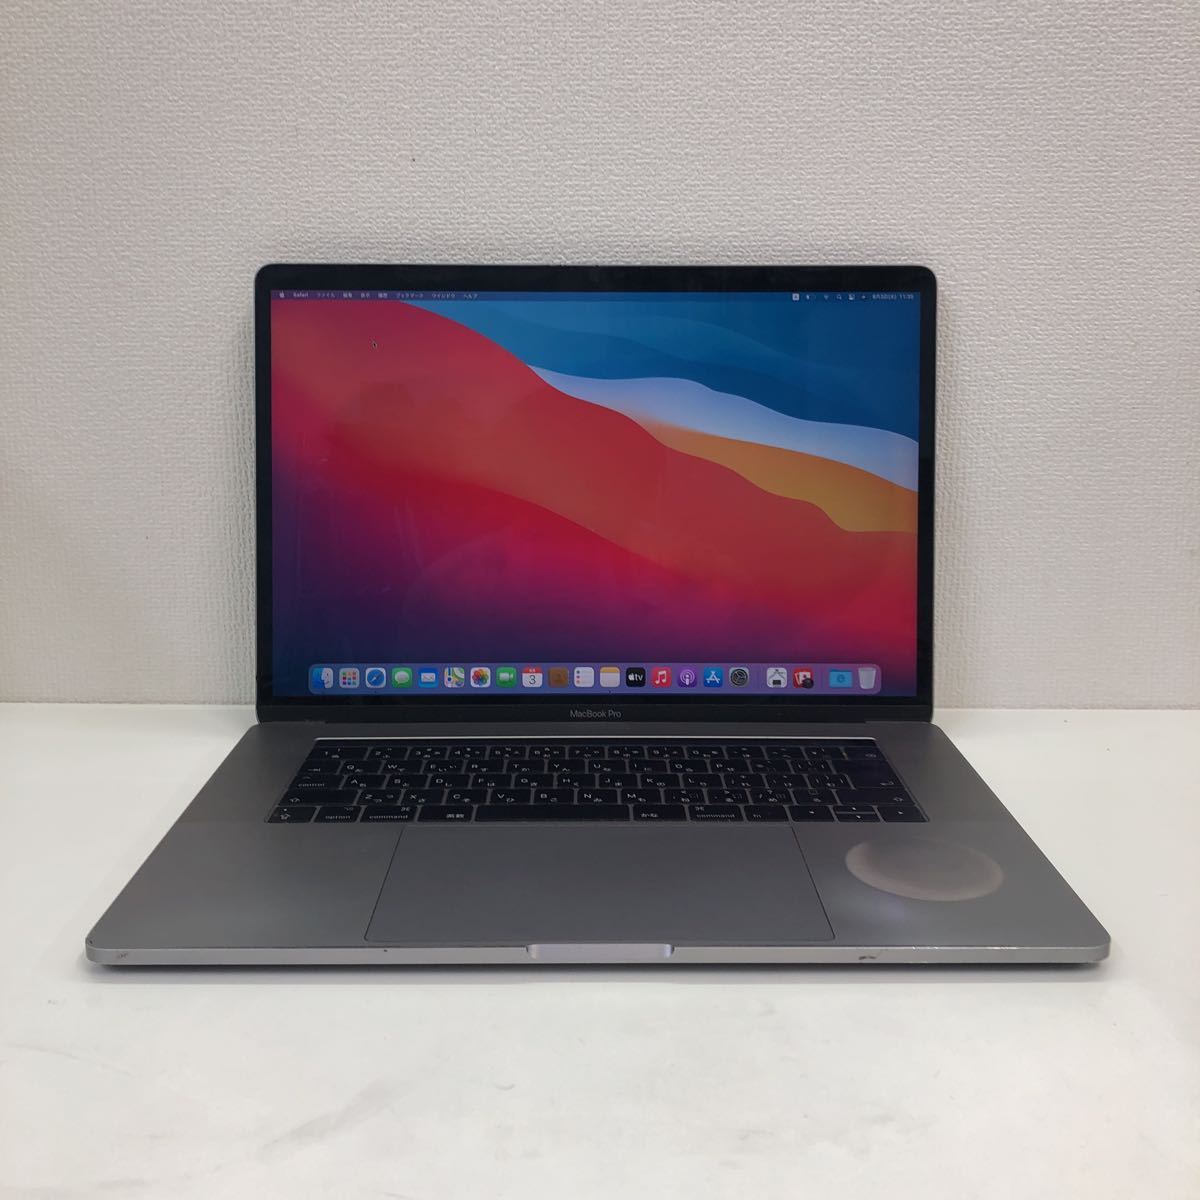 ジャンク品 Macbook Pro 15-inch 2017 core i7 クアッドコア2.9GHz